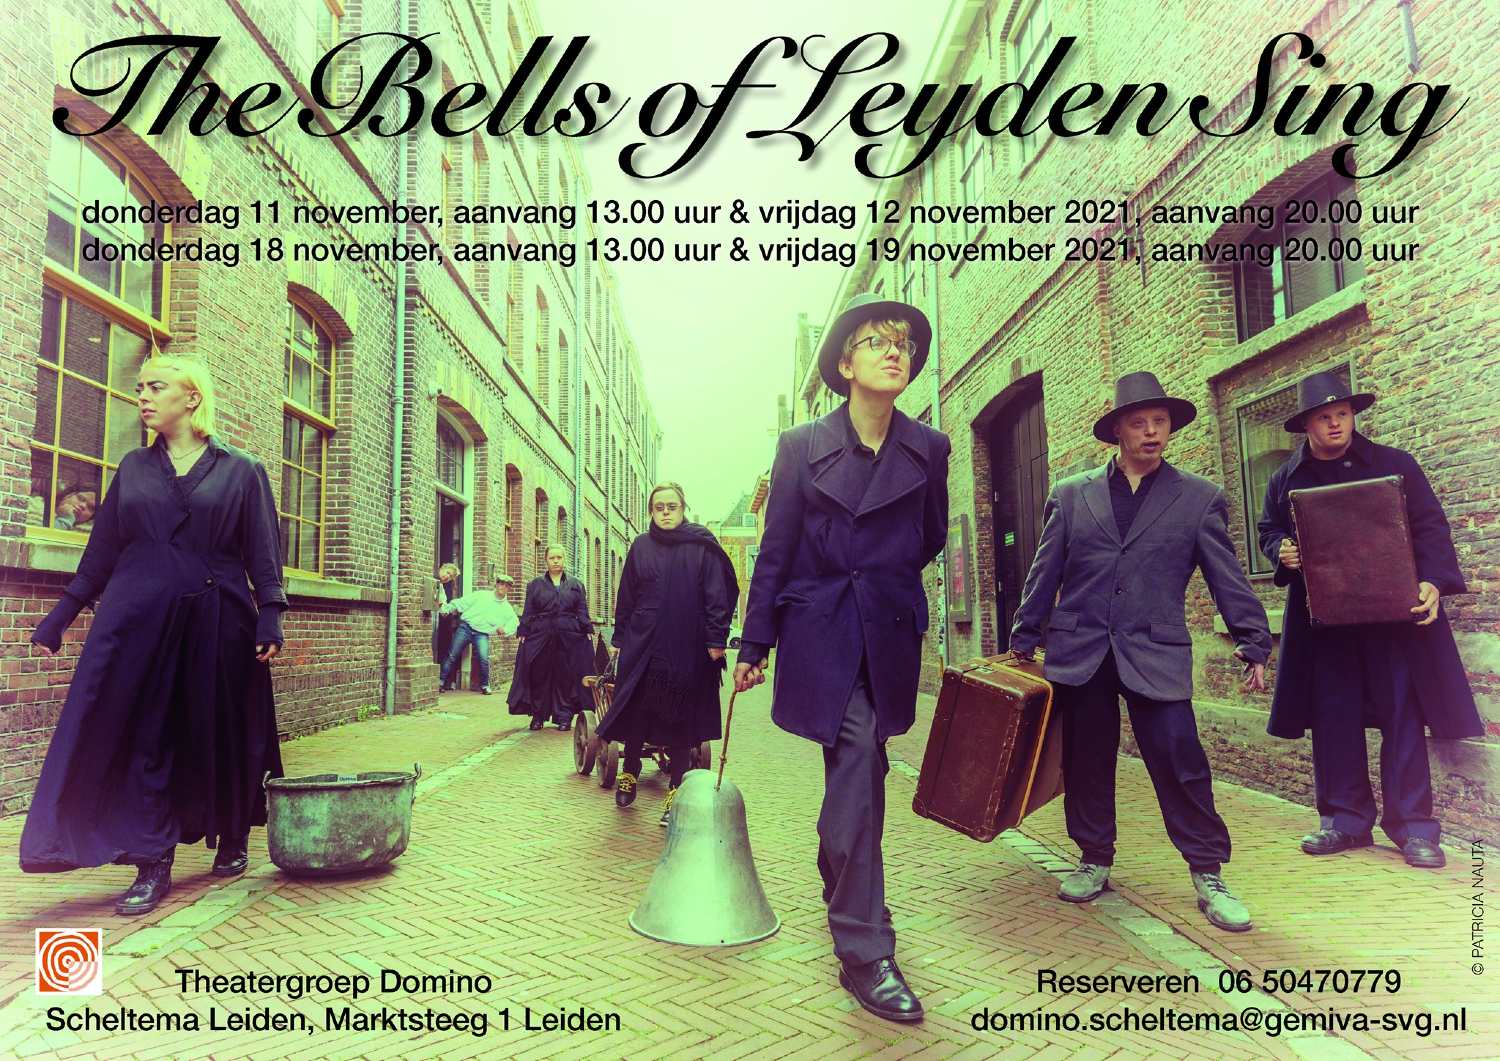 Theatergroep Dominoi speelt Bells of Leyden sing in Scheltema Leiden